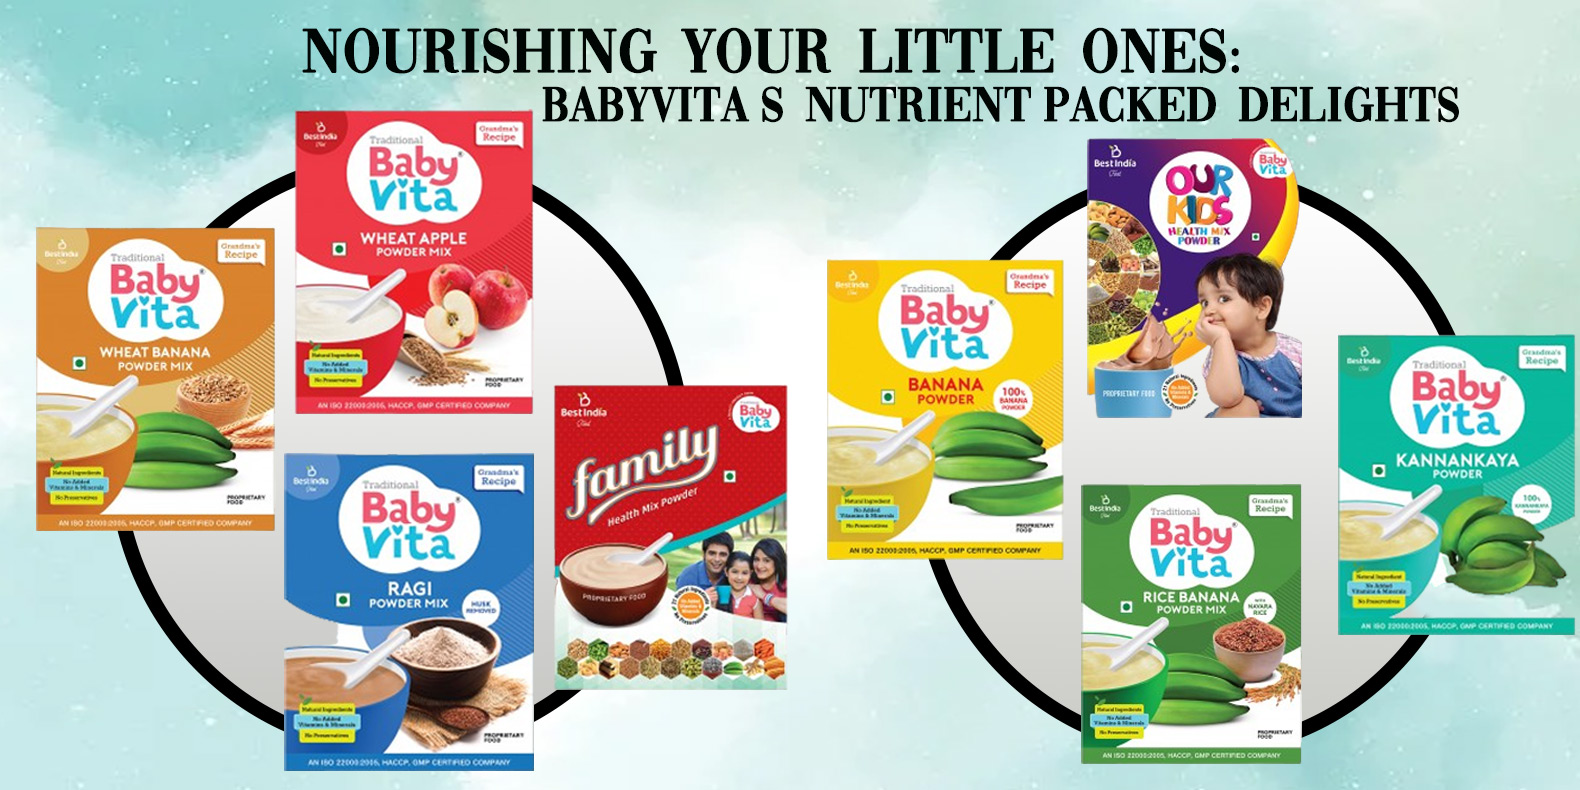 Nourishing Your Little Ones: Babyvita's Nutrient-packed Delights